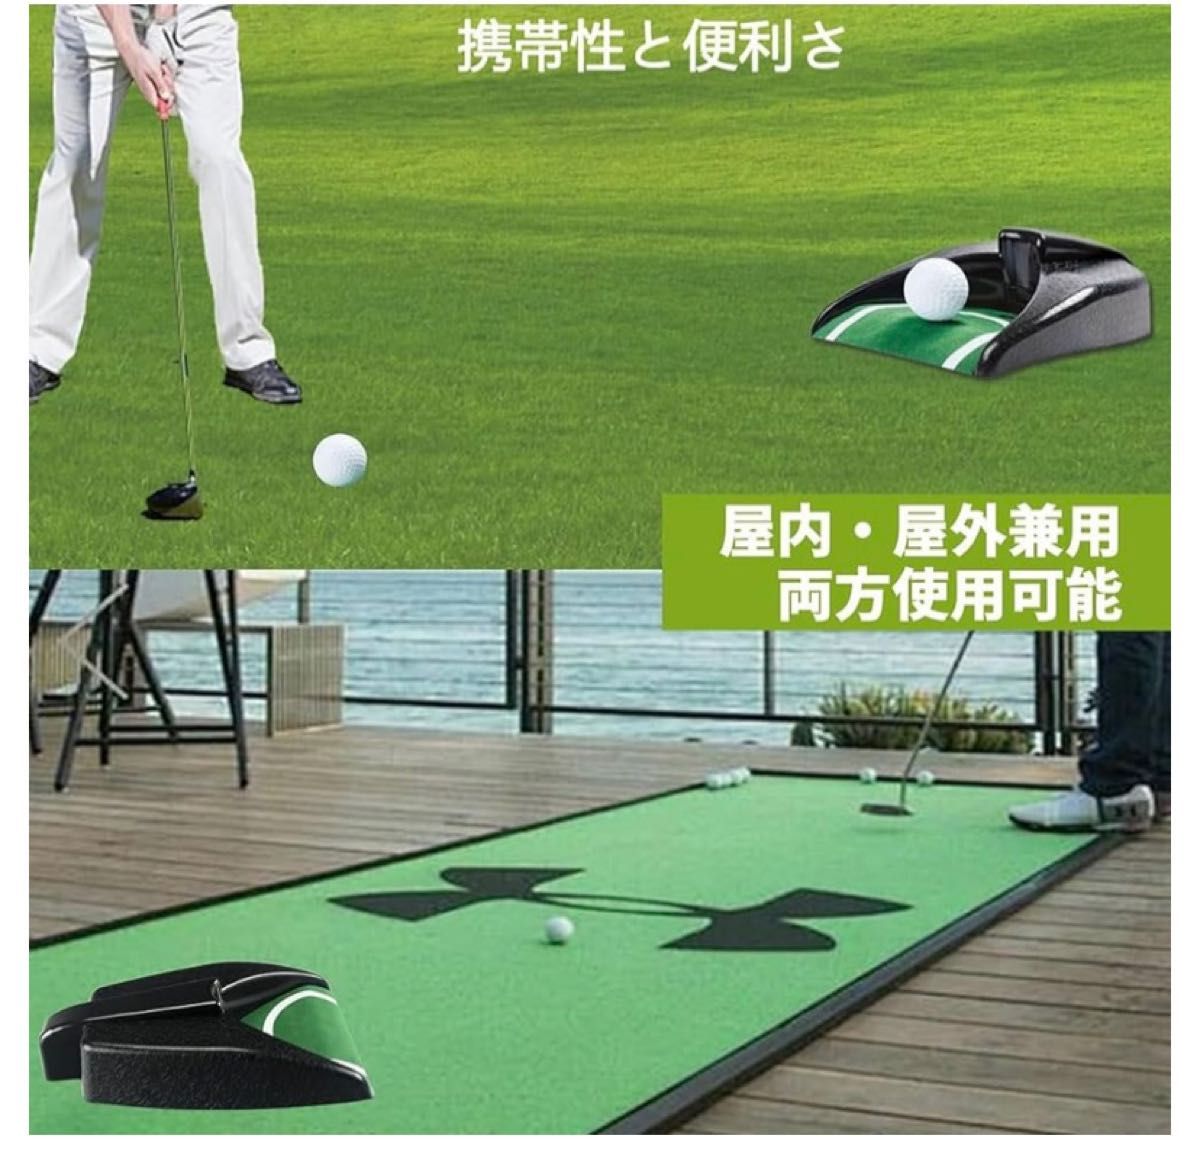 ゴルフ パター練習器具 パター 練習 電動 ゴルフ練習 自動返球